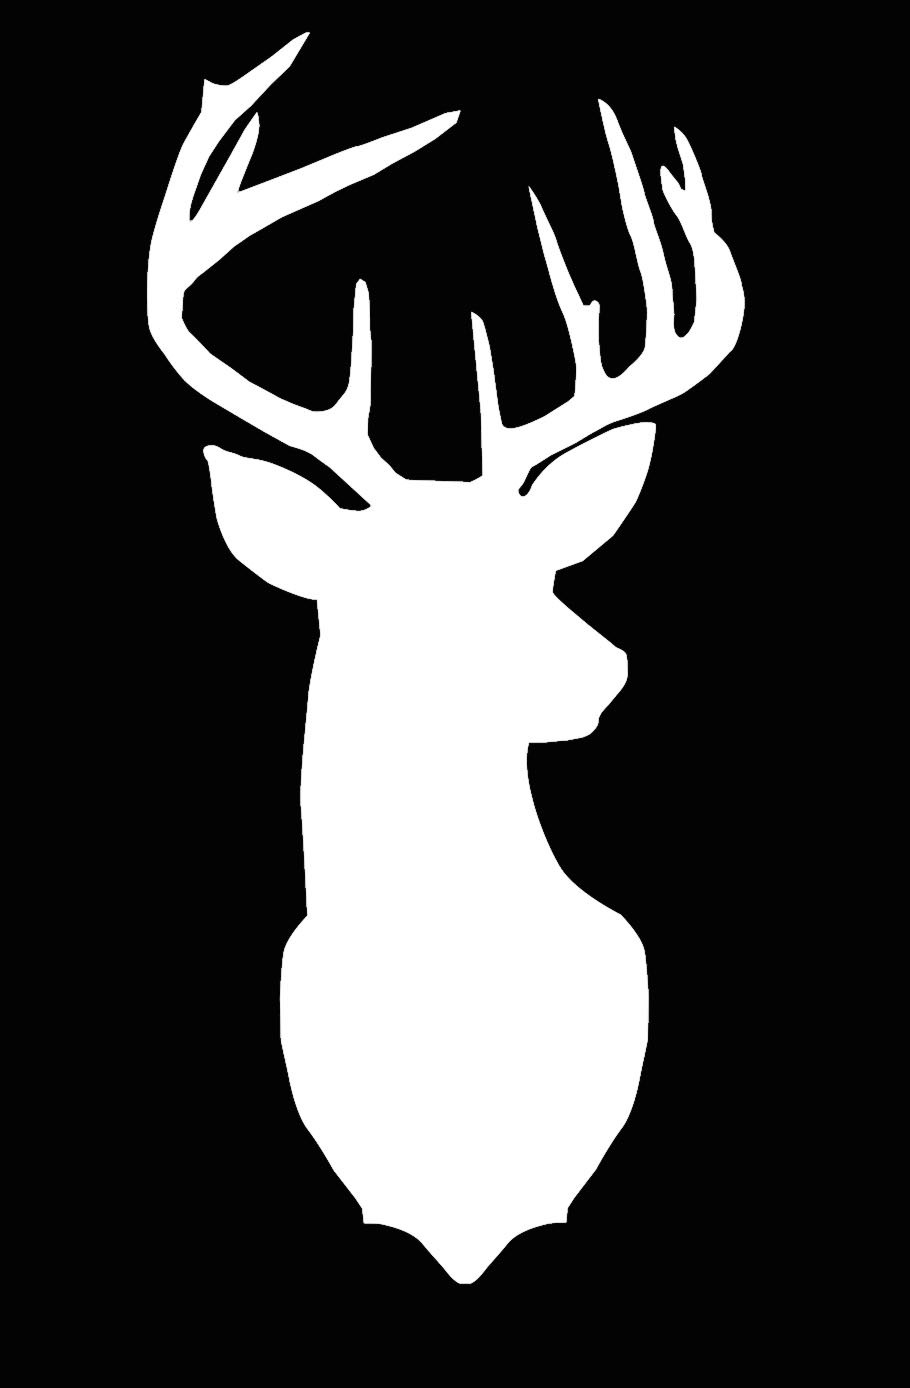 Deer Cameo Silhouette File by LivinOnSunnyside on Etsy